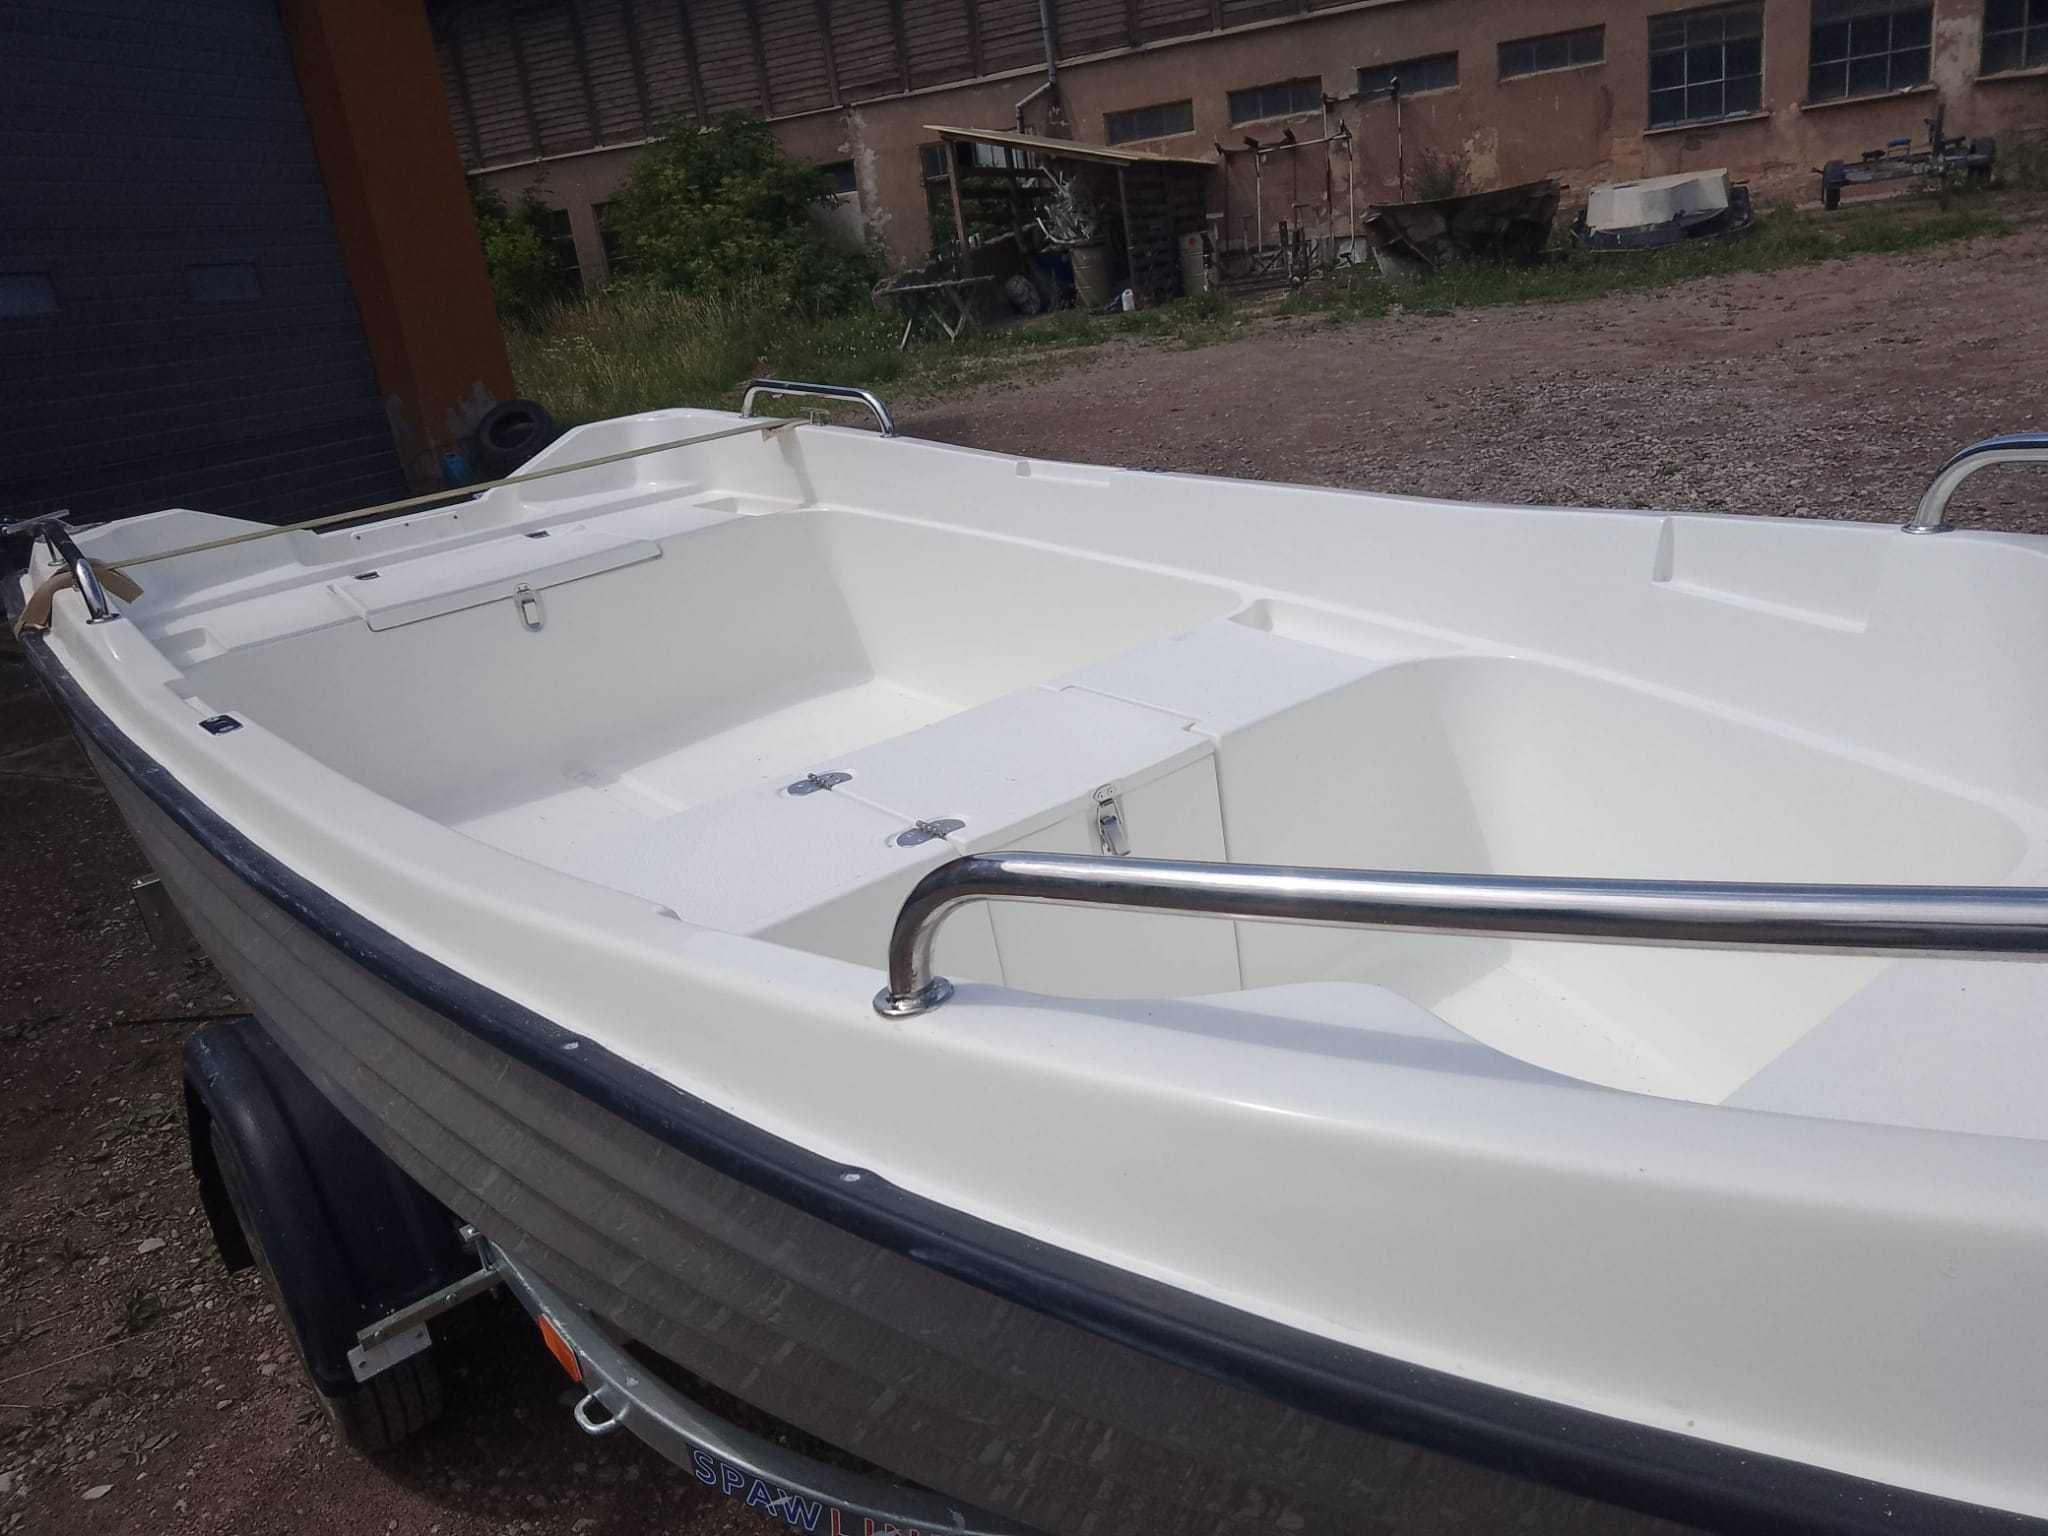 Nowa łódź wędkarska Masurian Maverick 40, podobna do Michał Milex